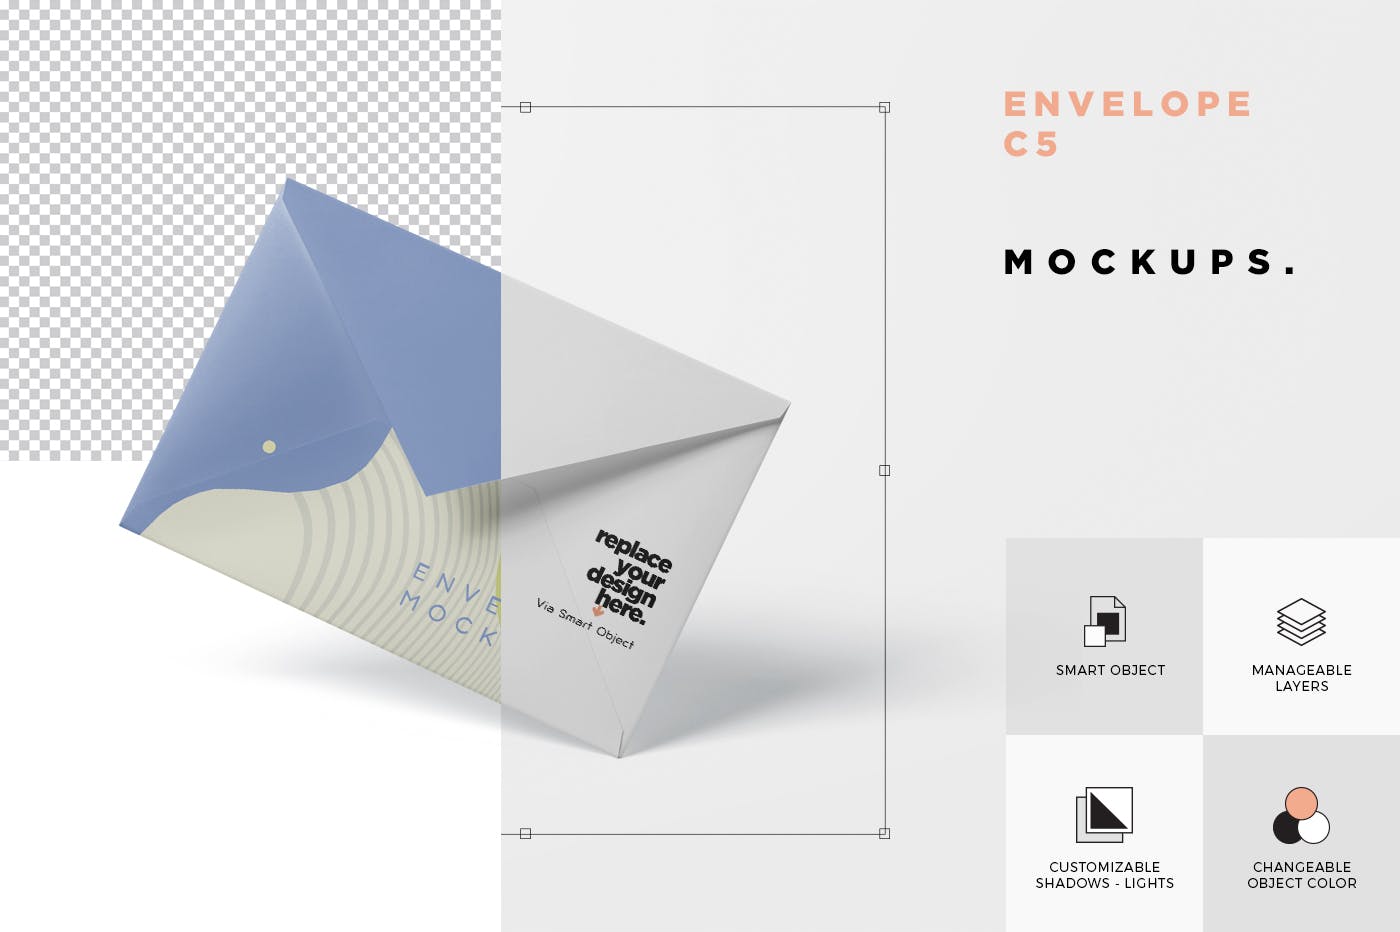 高端企业信封外观设计图素材库精选模板 Envelope C5 – C6 Mock-Up Set插图(6)